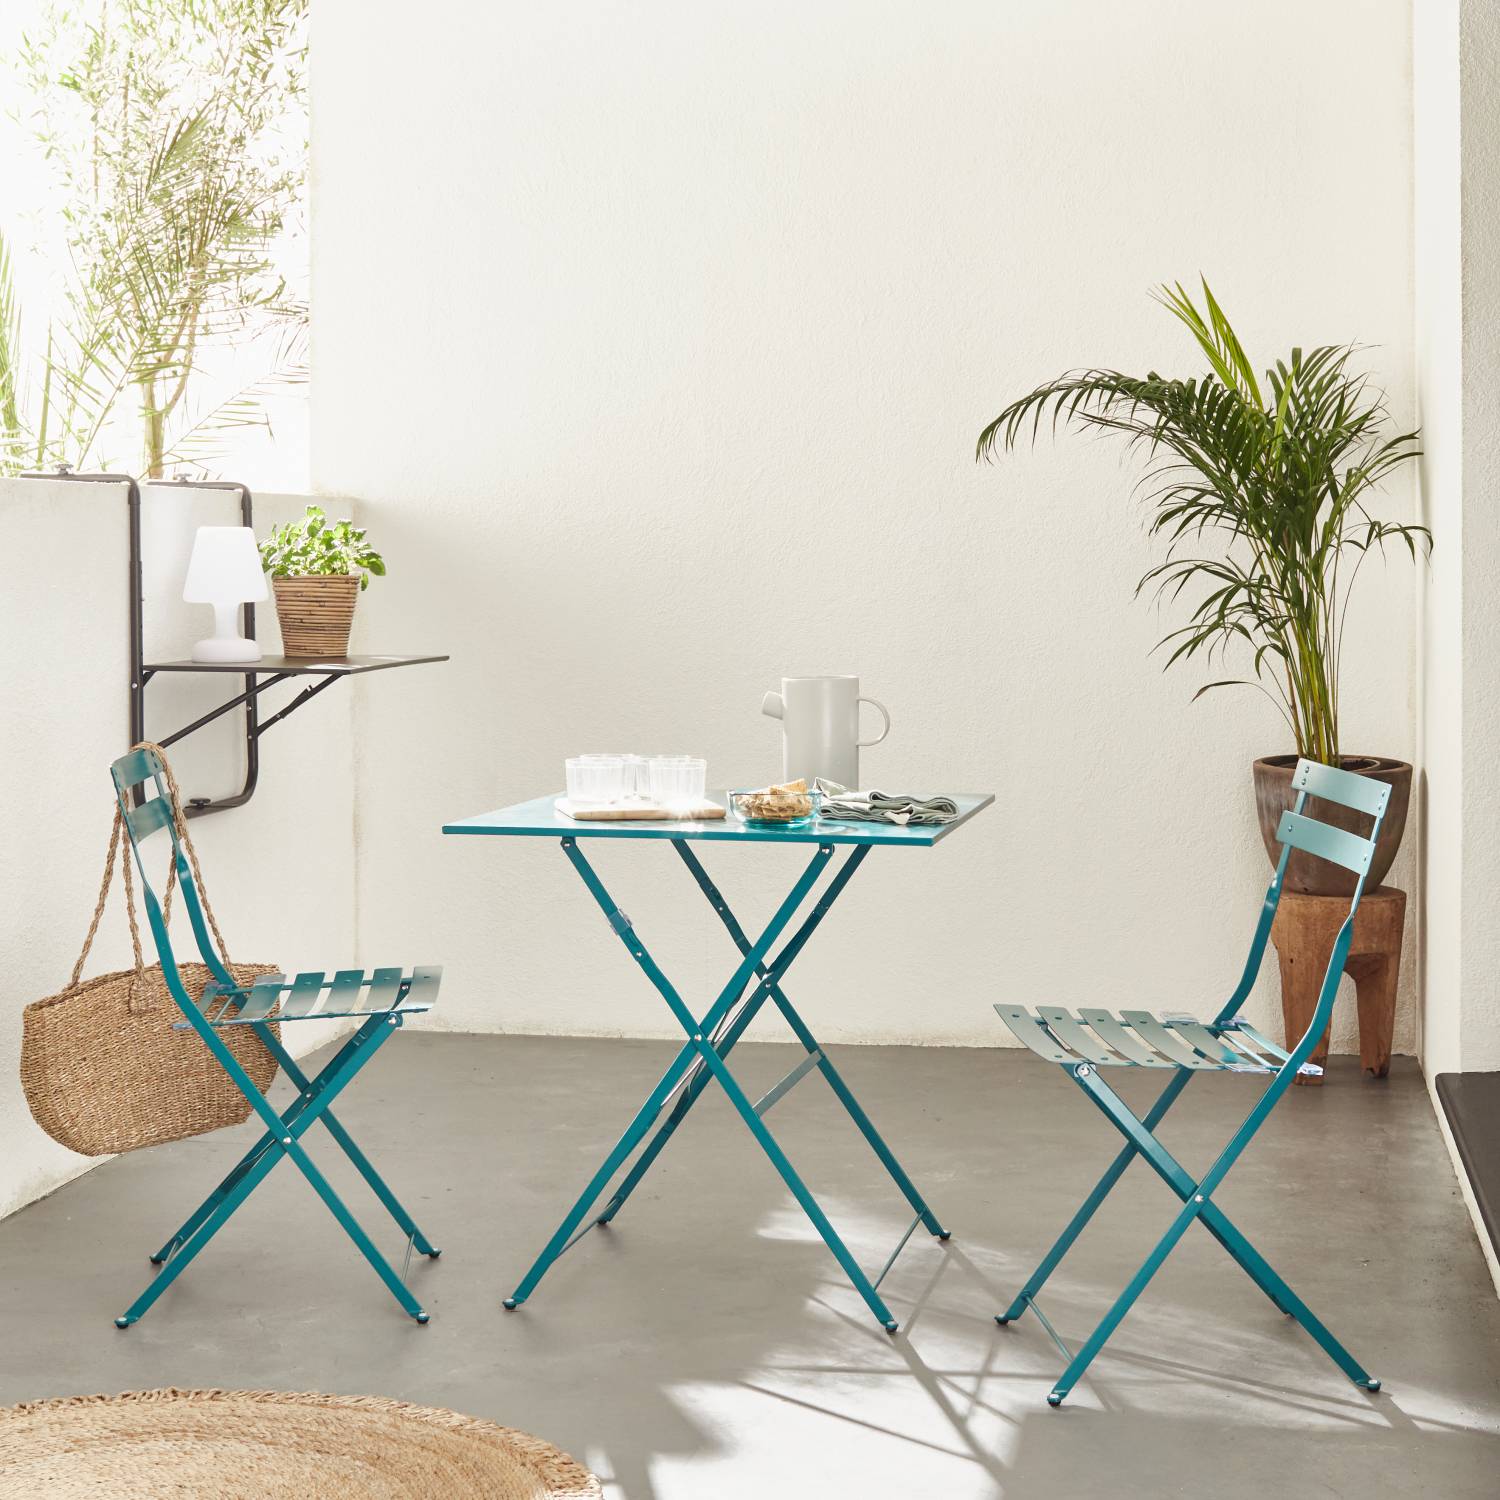 Klappbare Bistro-Gartenmöbel - Emilia quadratisch entenblau - Tisch 70x70cm mit zwei Klappstühlen aus pulverbeschichtetem Stahl | sweeek